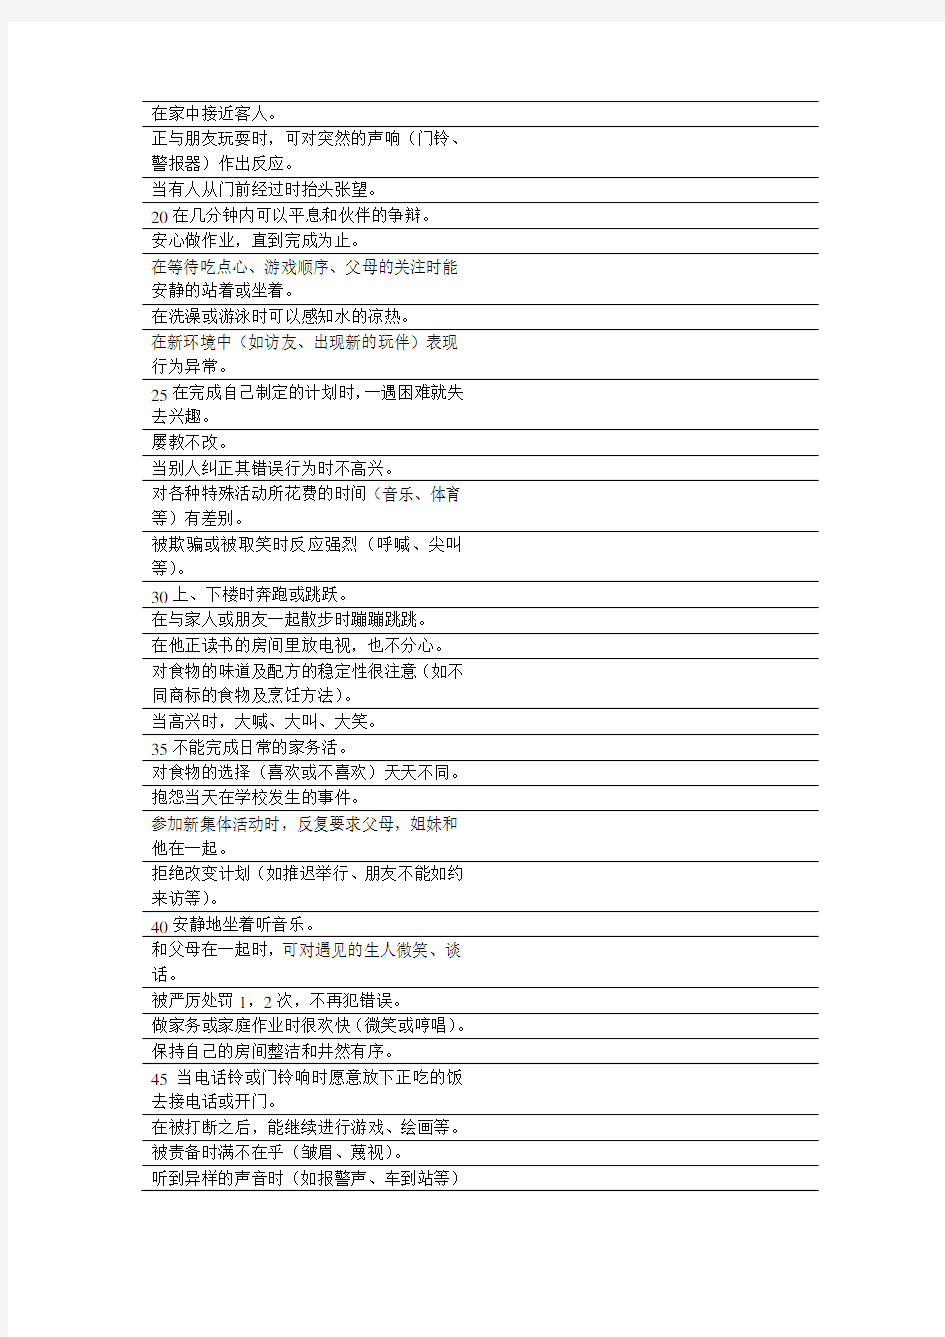 中国8~12岁学龄儿童气质问卷(CSTS)